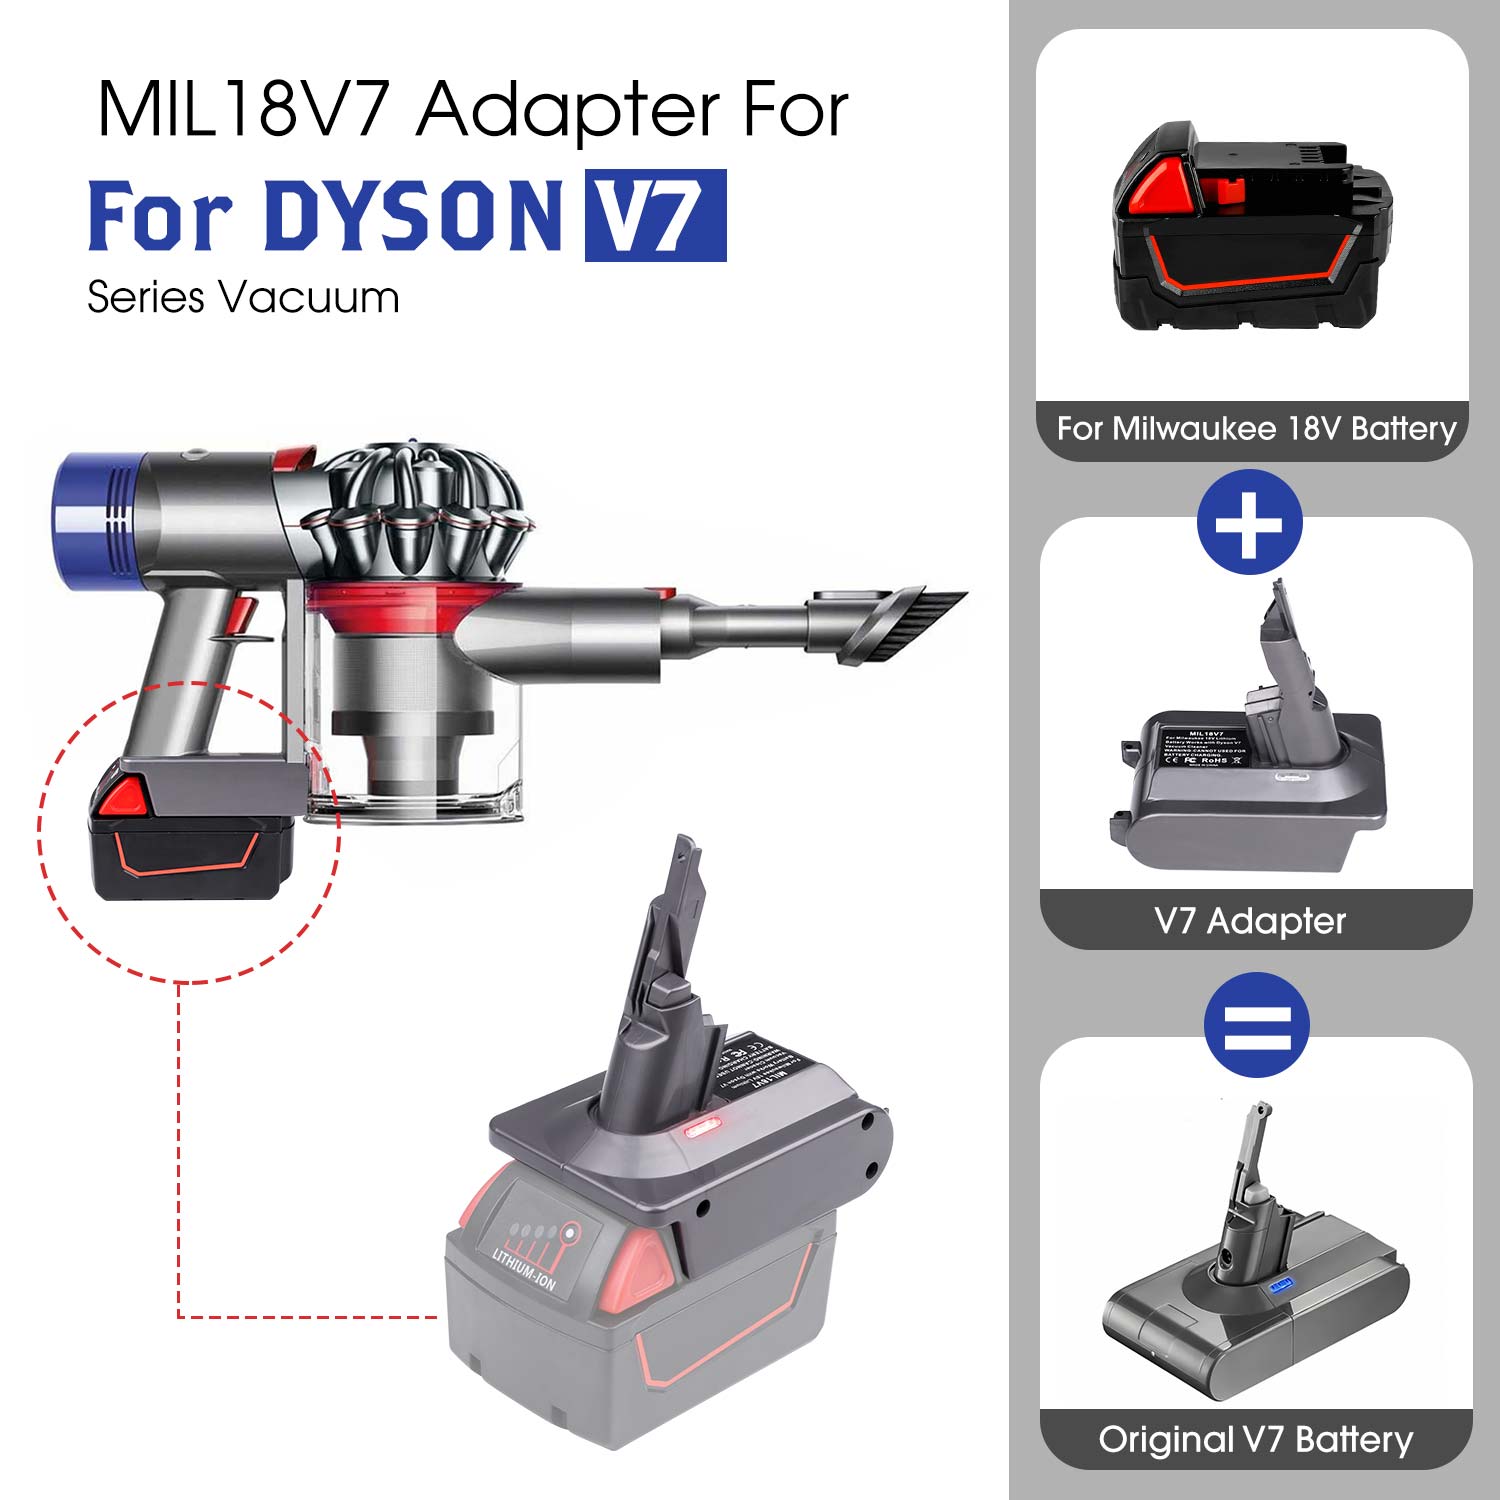 Dyson V7 adapteriui Milwaukee M18 18V ličio baterijos keitikliui į Dyson V7, naudokite Dyson V7 dulkių siurbliui